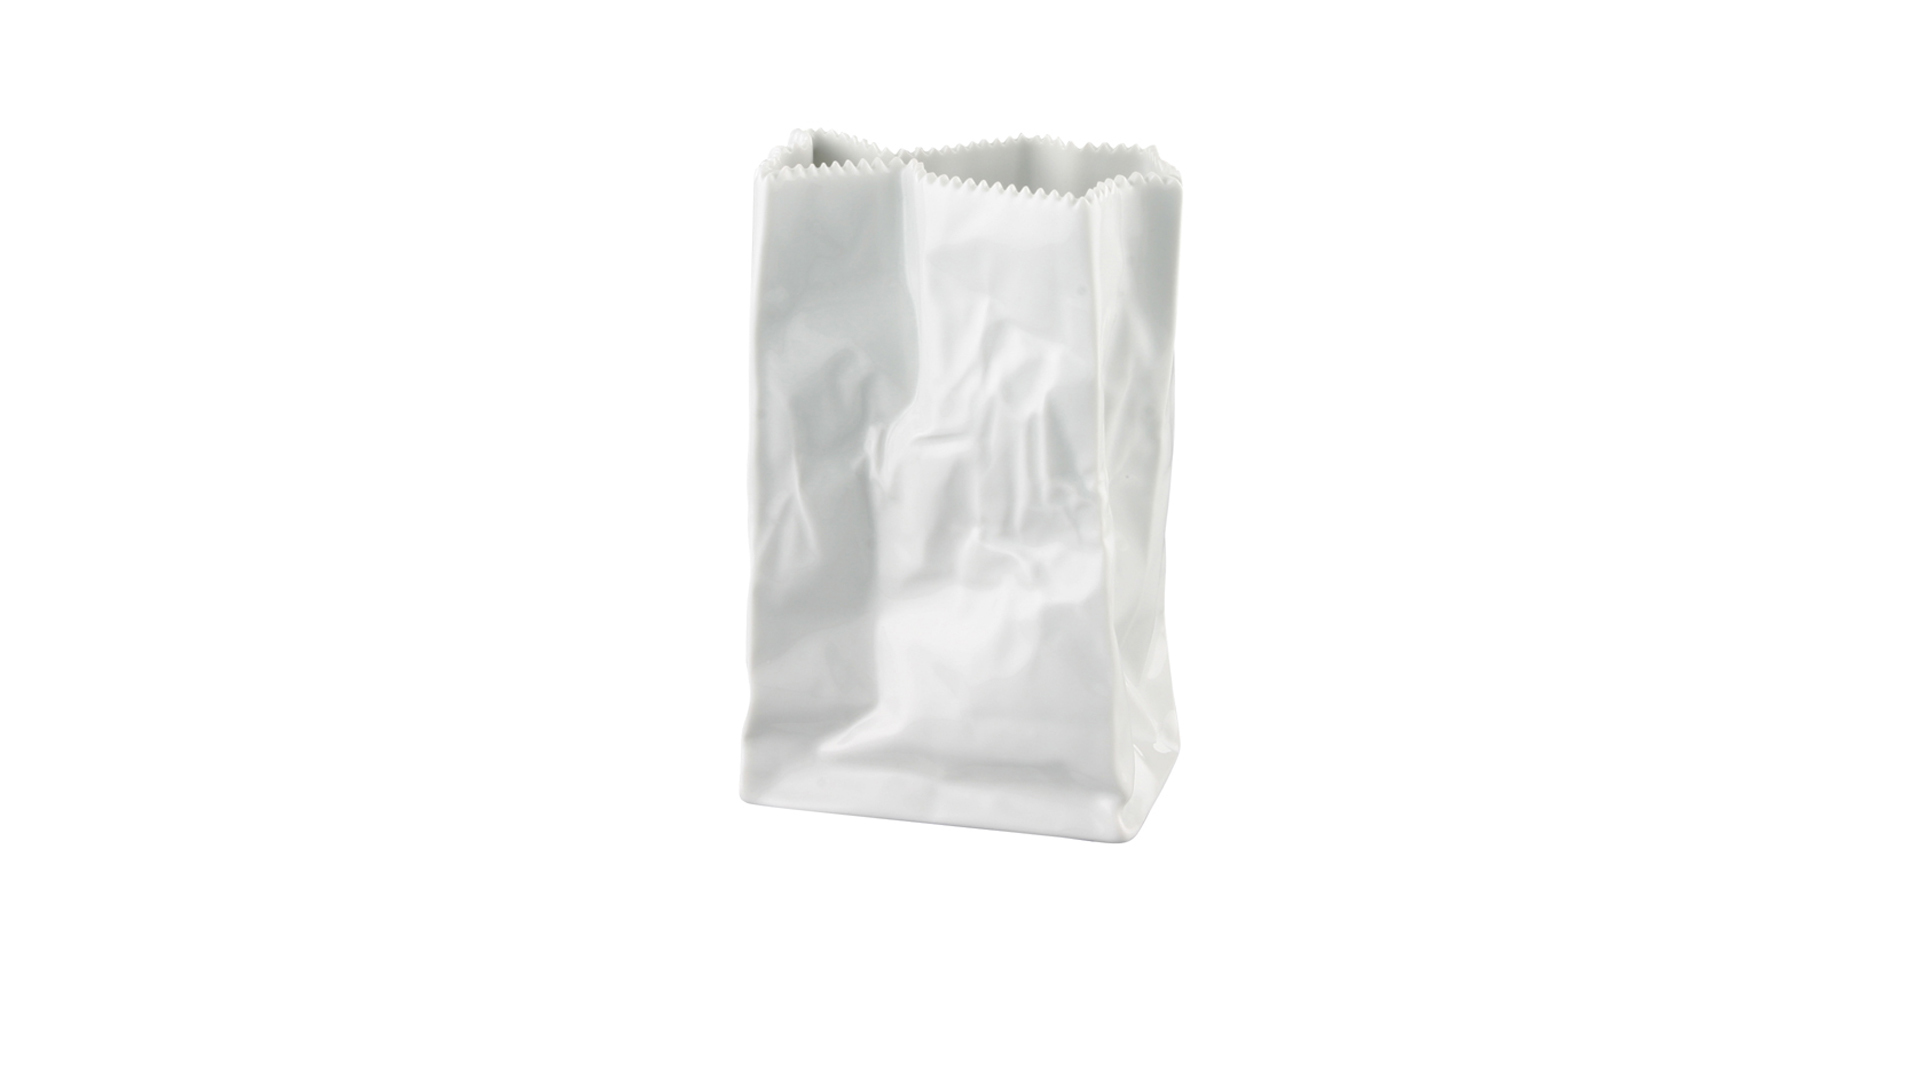 Ваза Rosenthal Пакет 18 см, фарфор, белая, глазурь, п/к